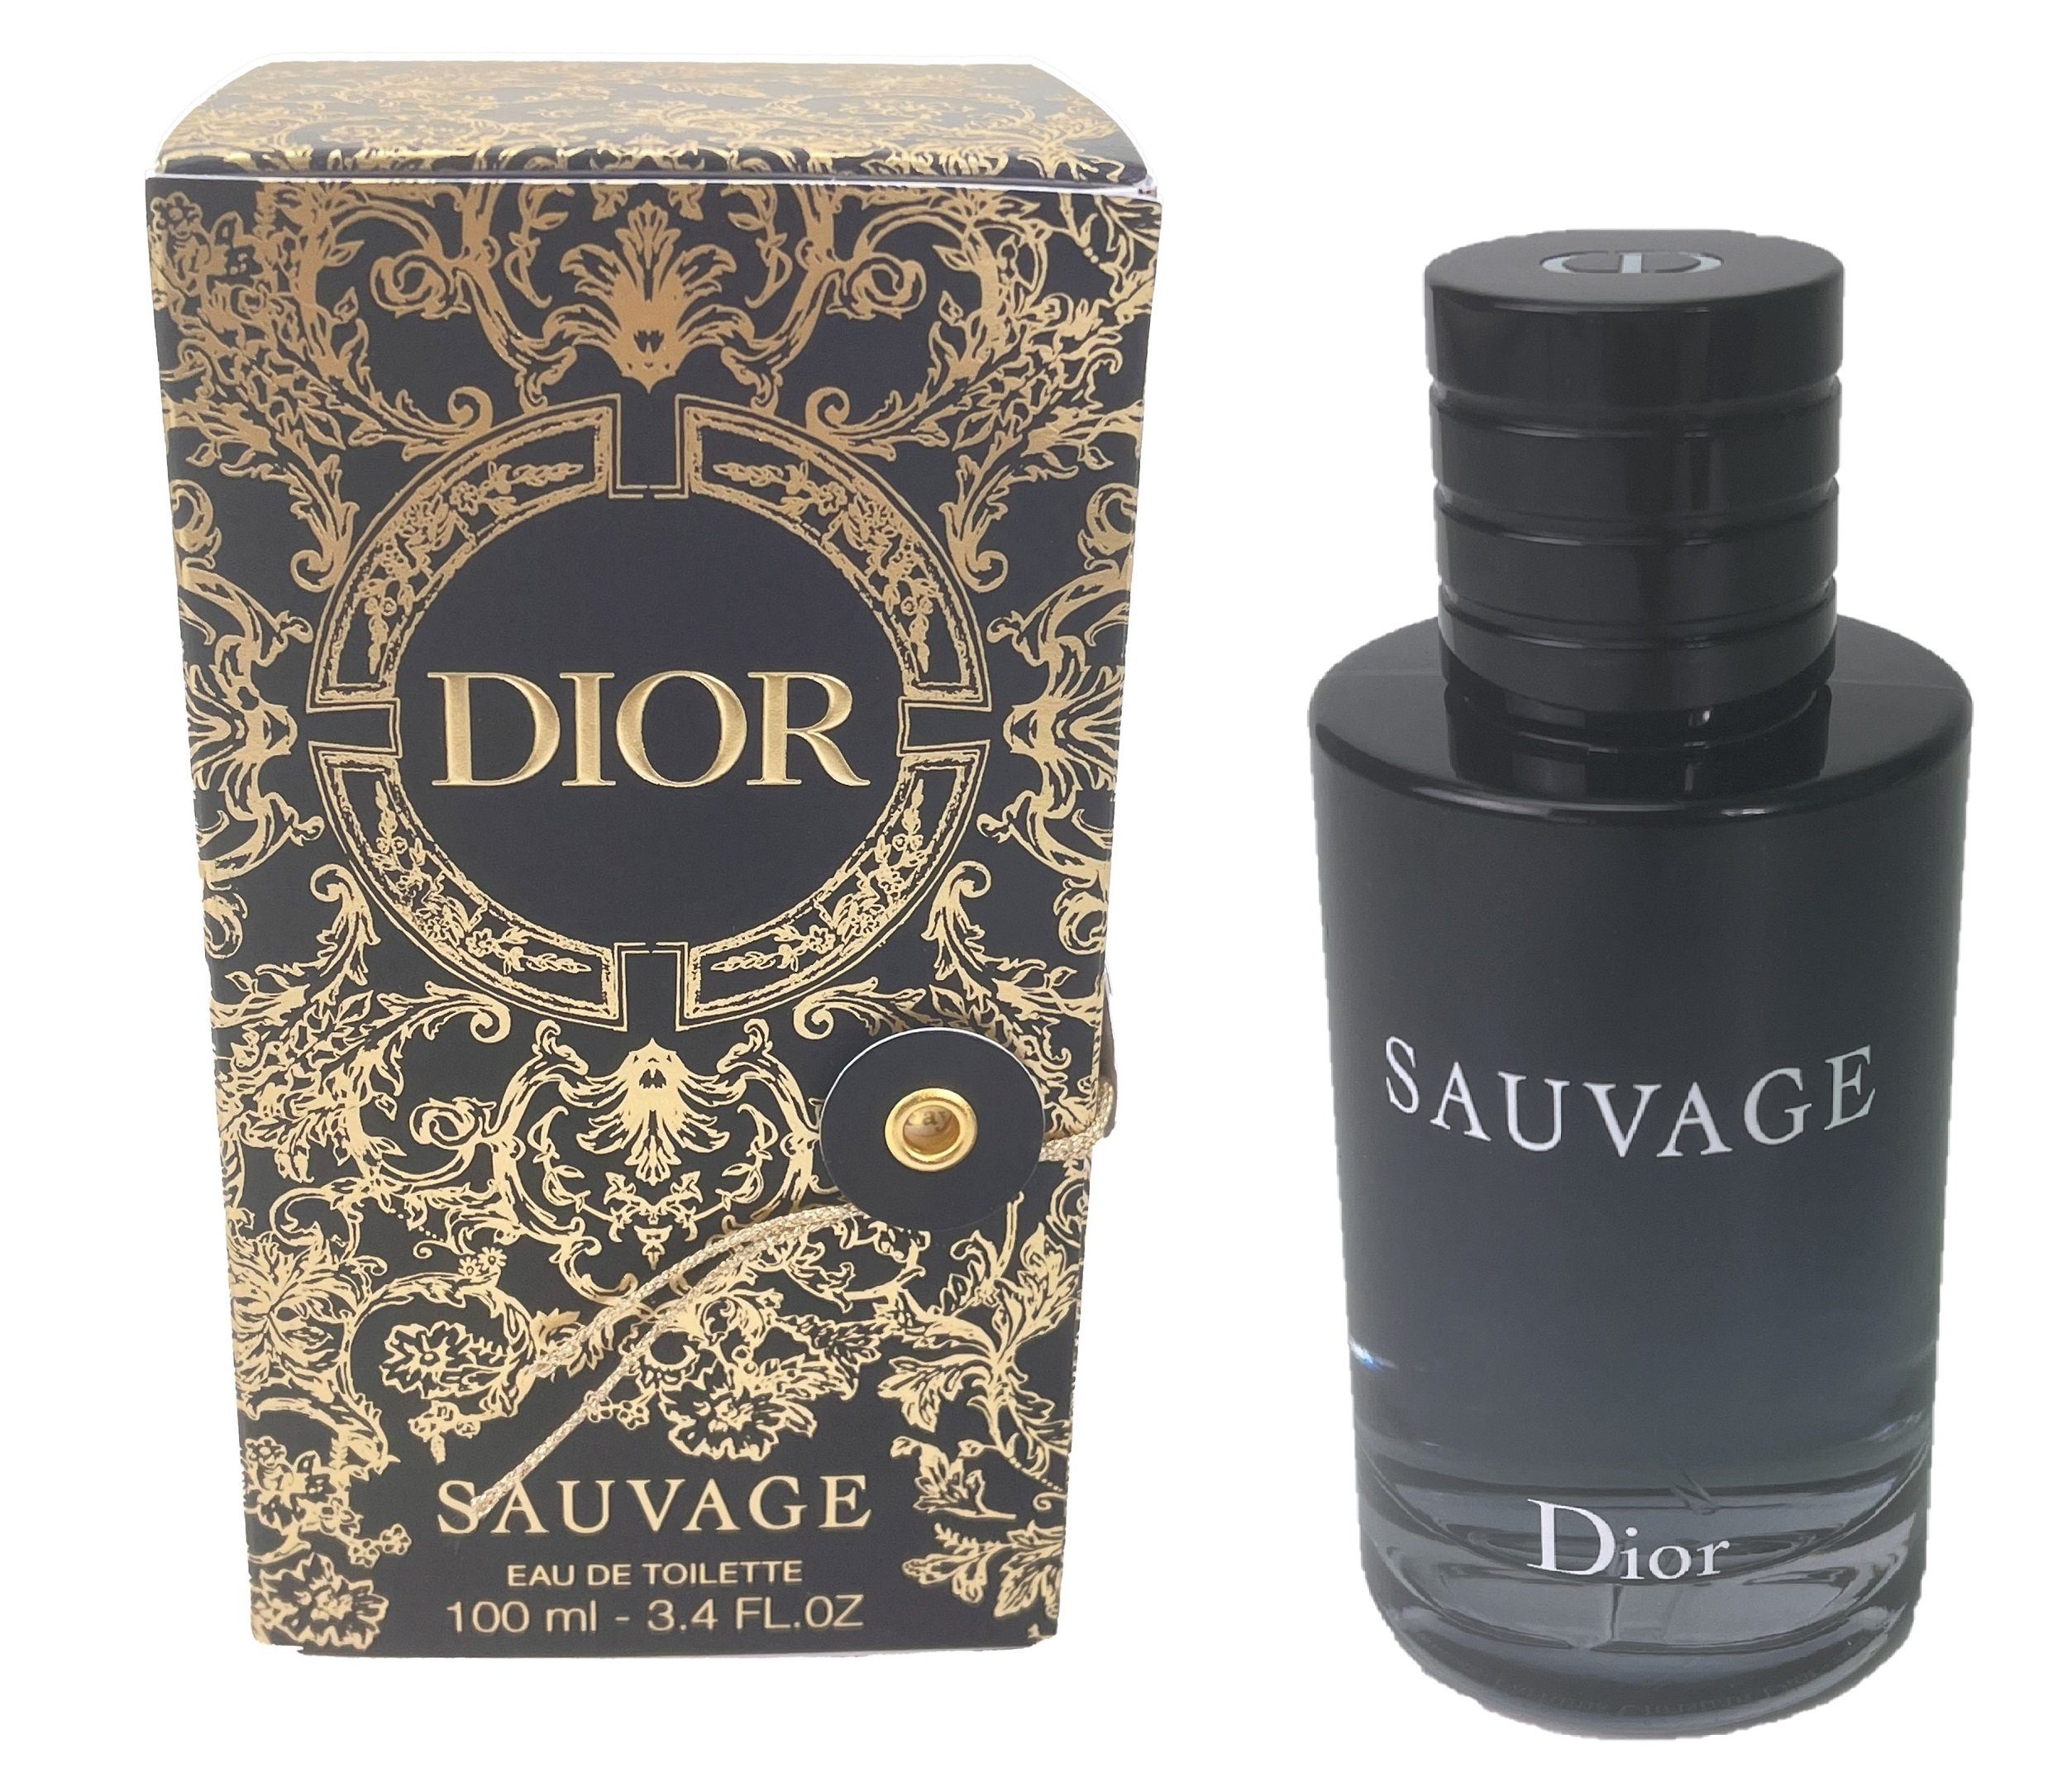 Dior Eau de Toilette Dior Sauvage Eau de Toilette Spray, limitierte Ausgabe